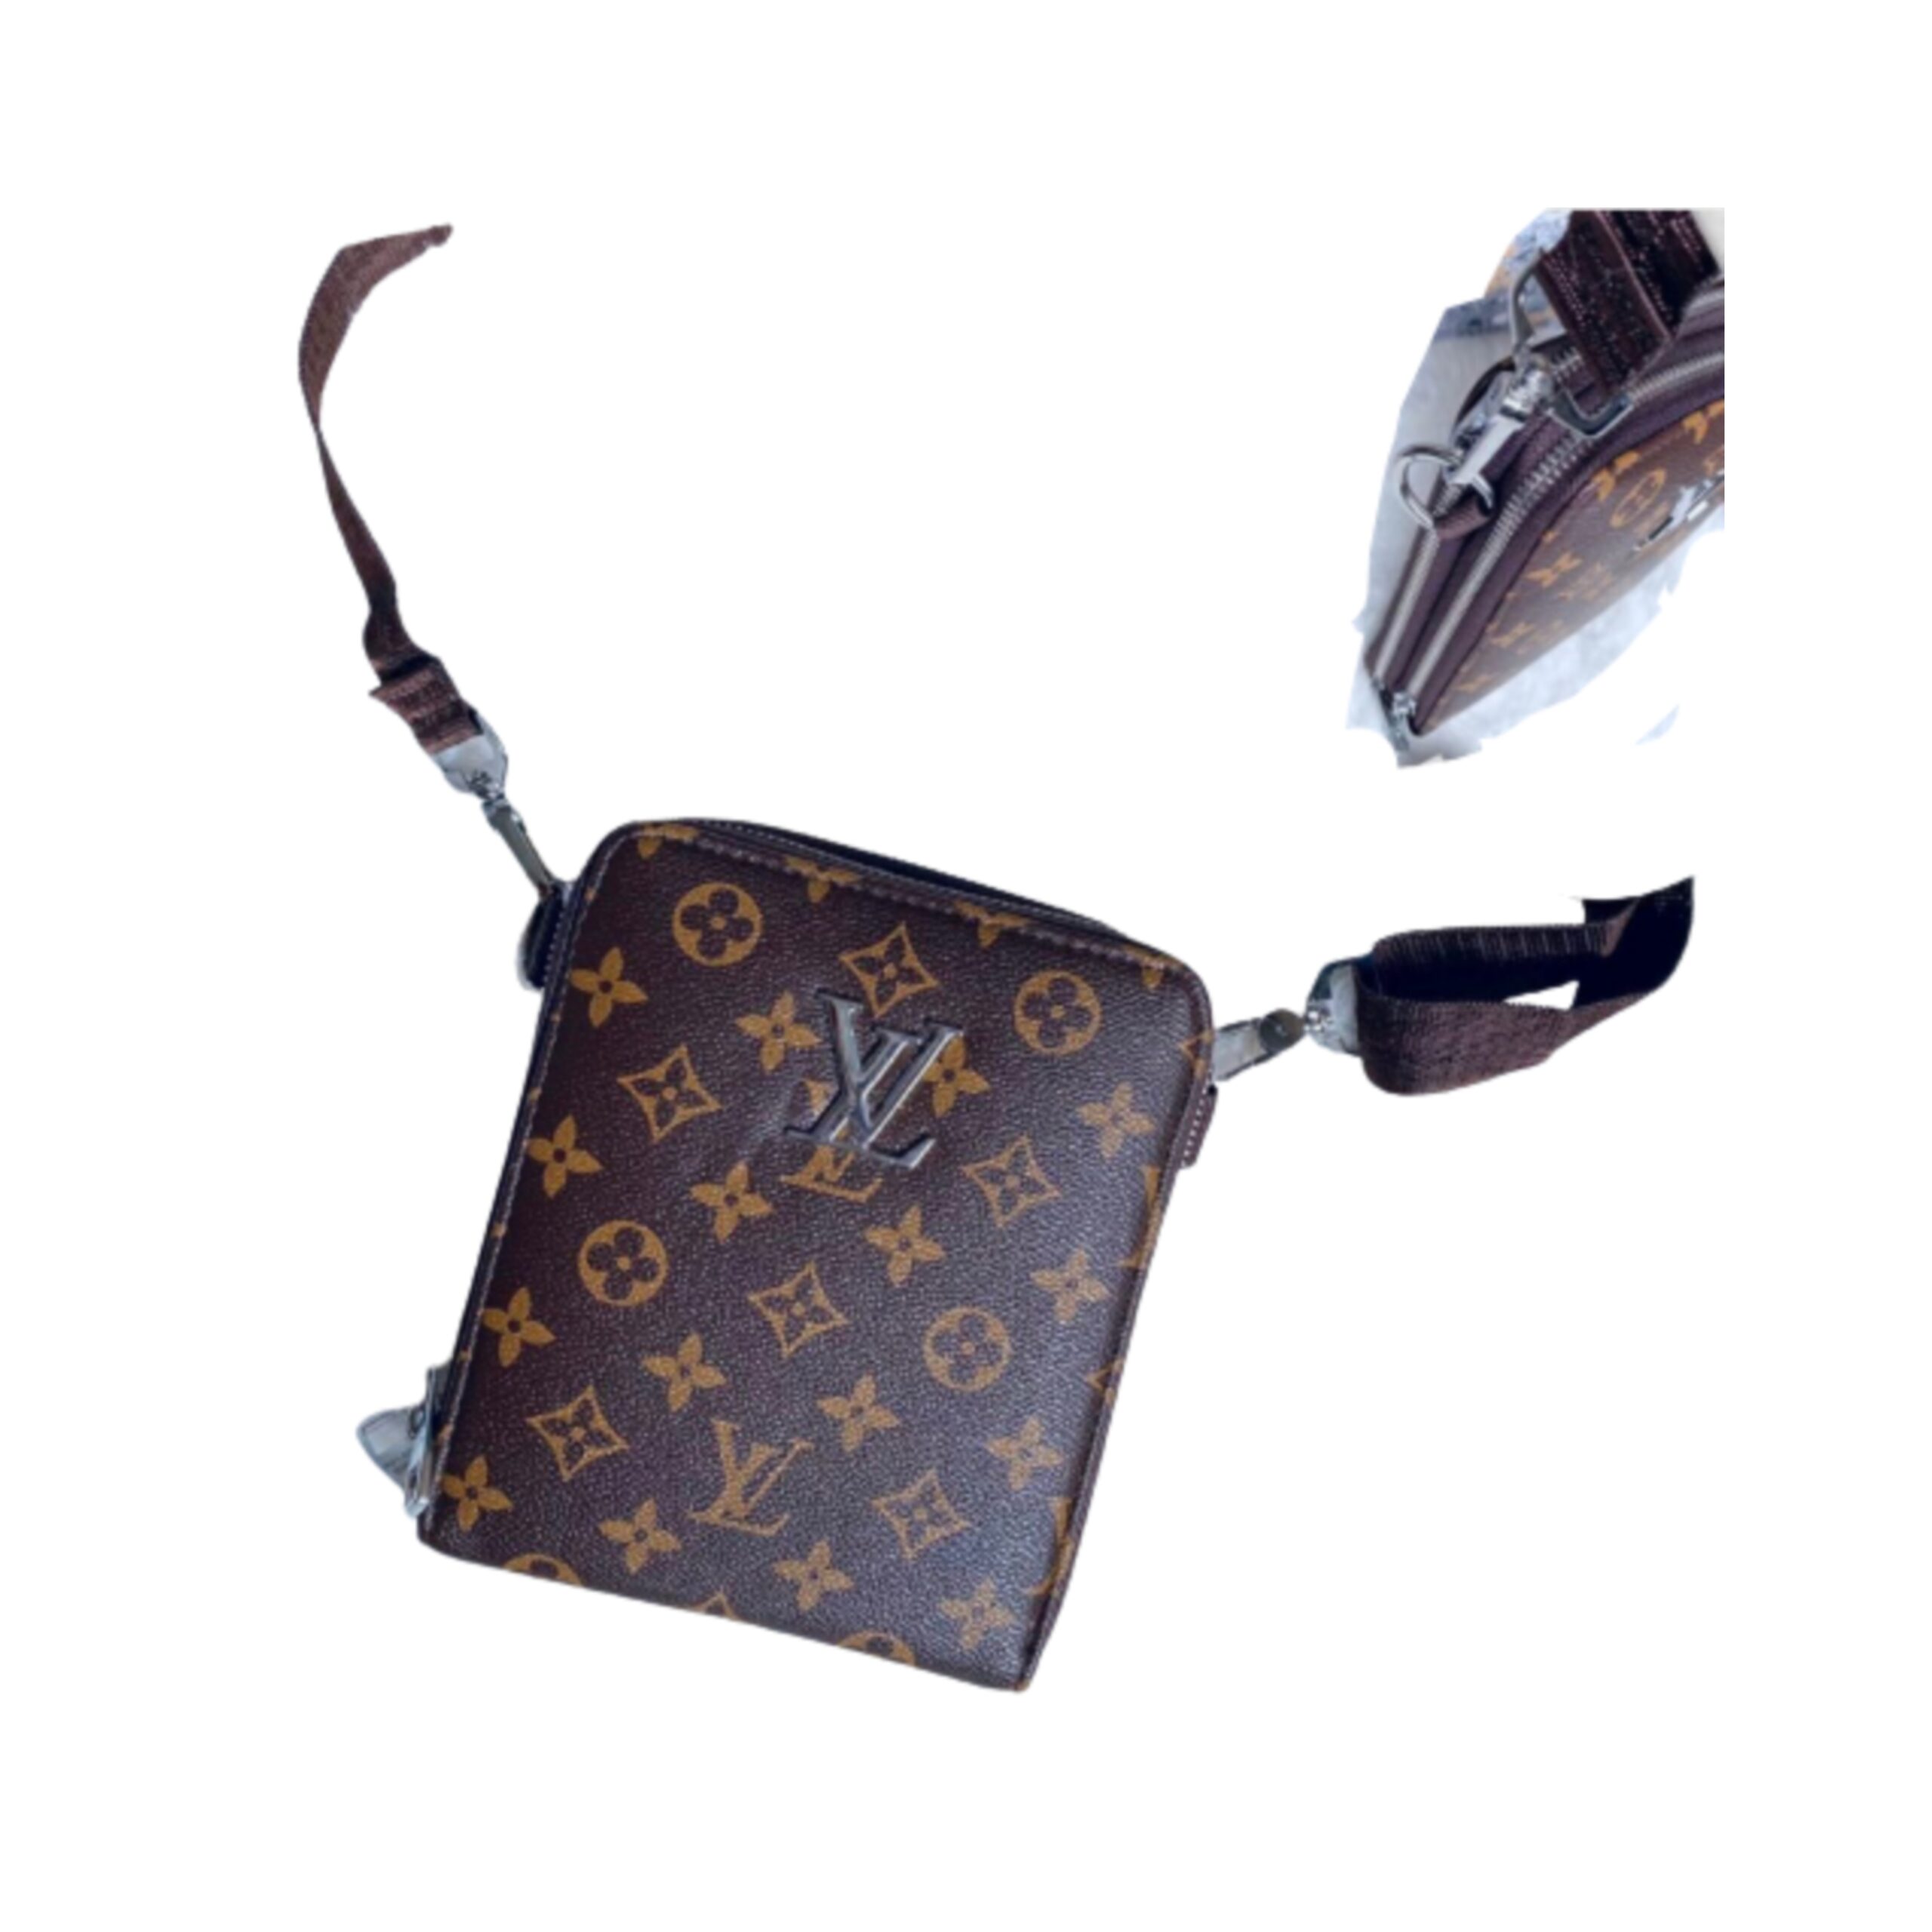 Designer Louis Vuitton Sling bag / Shoulder bag - Deep brown